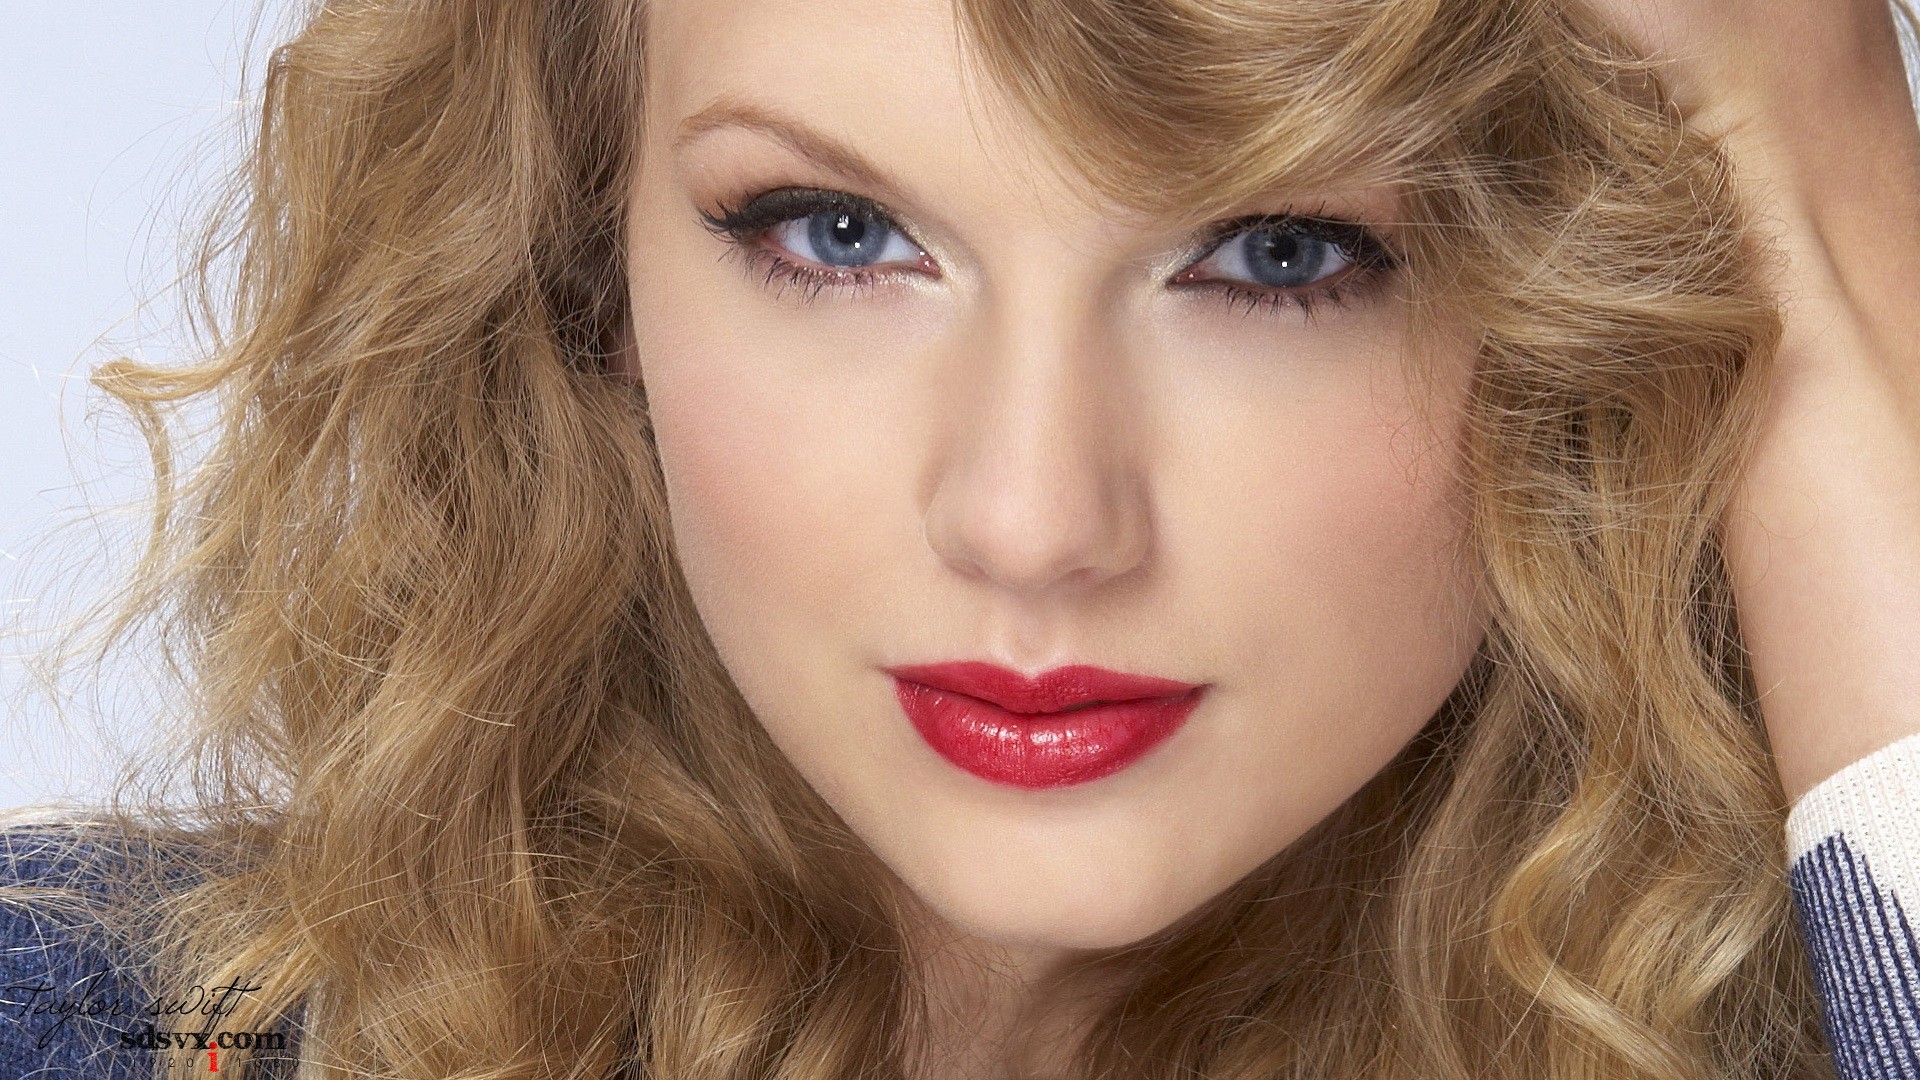 women, Taylor Swift, models - desktop wallpaper